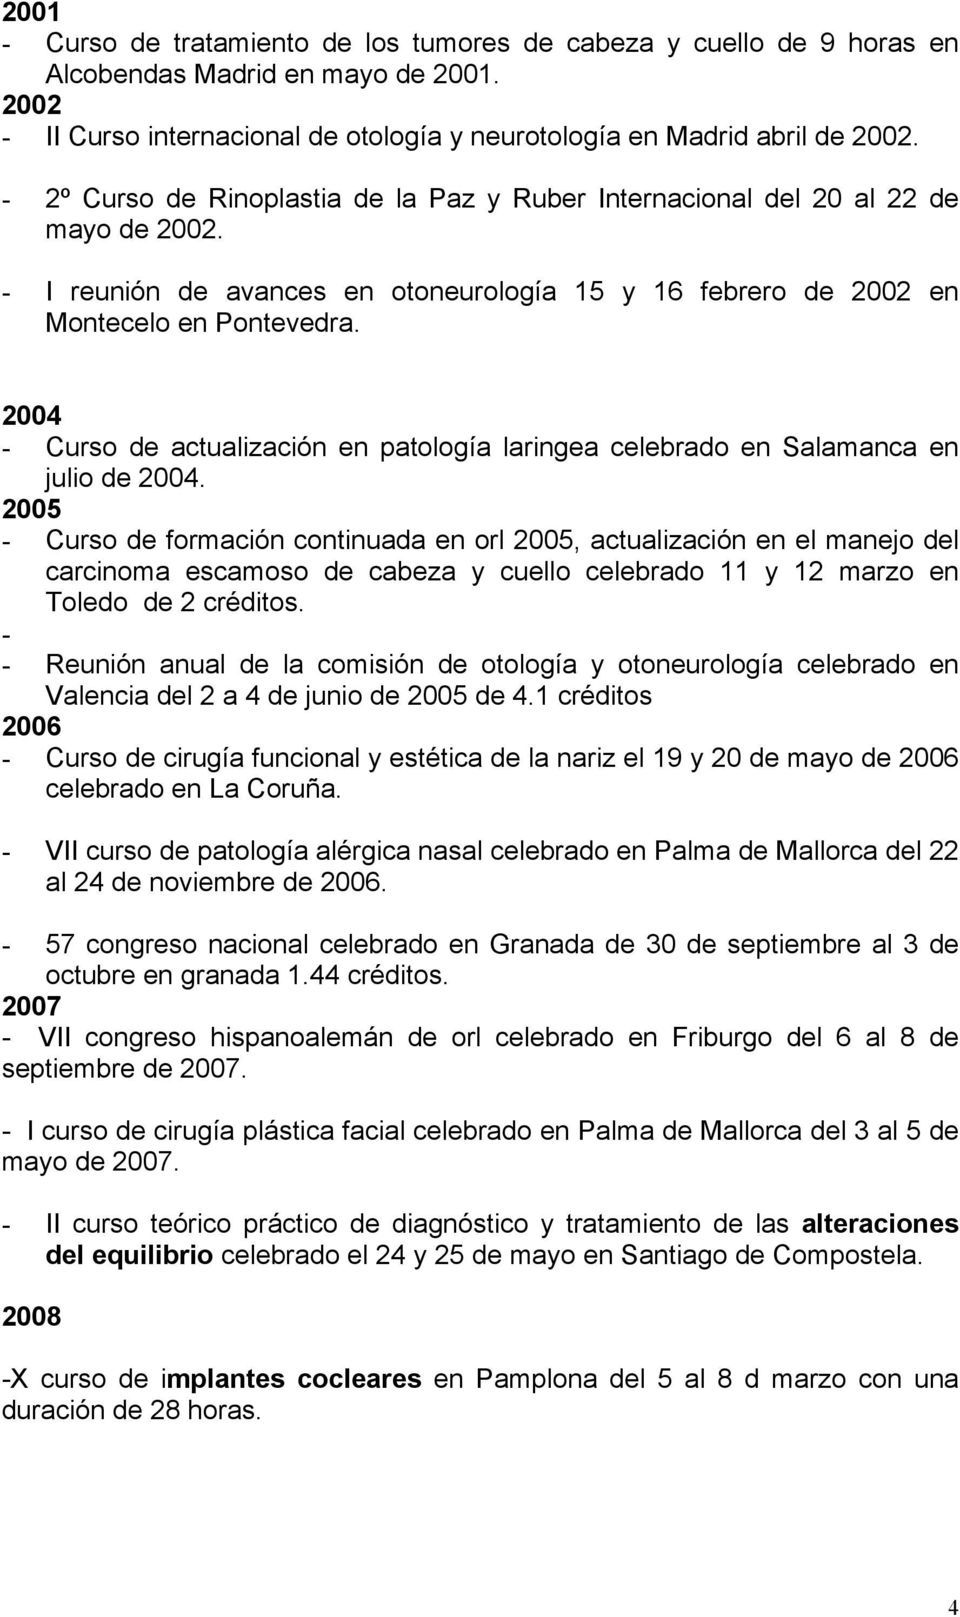 2004 - Curso de actualización en patología laringea celebrado en Salamanca en julio de 2004.